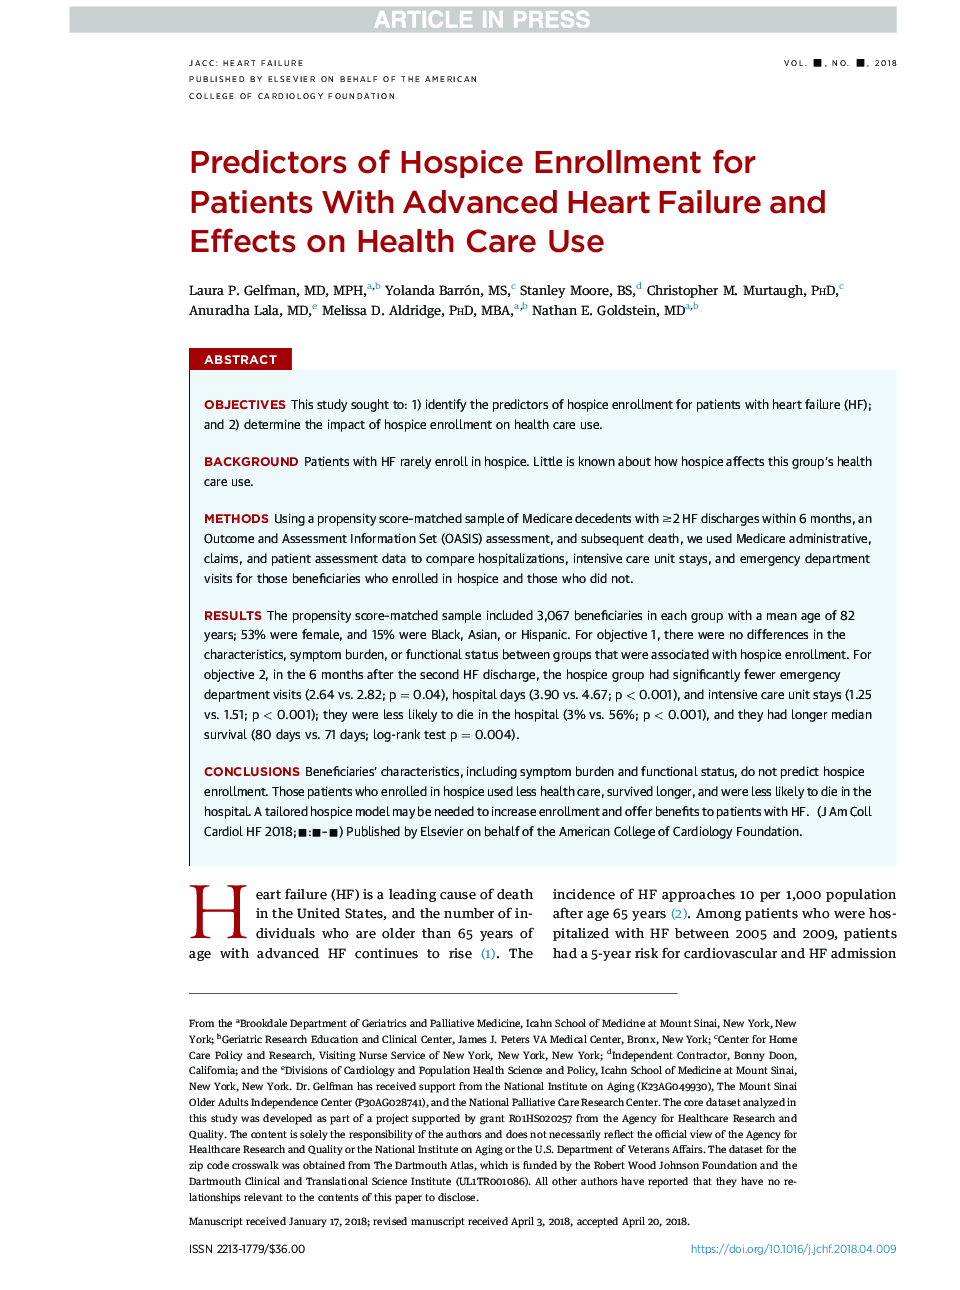 پیش بینی ثبت نام بیمارستانی در بیماران مبتلا به نارسایی قلبی پیشرفته و تأثیر آنها بر استفاده از مراقبت های بهداشتی